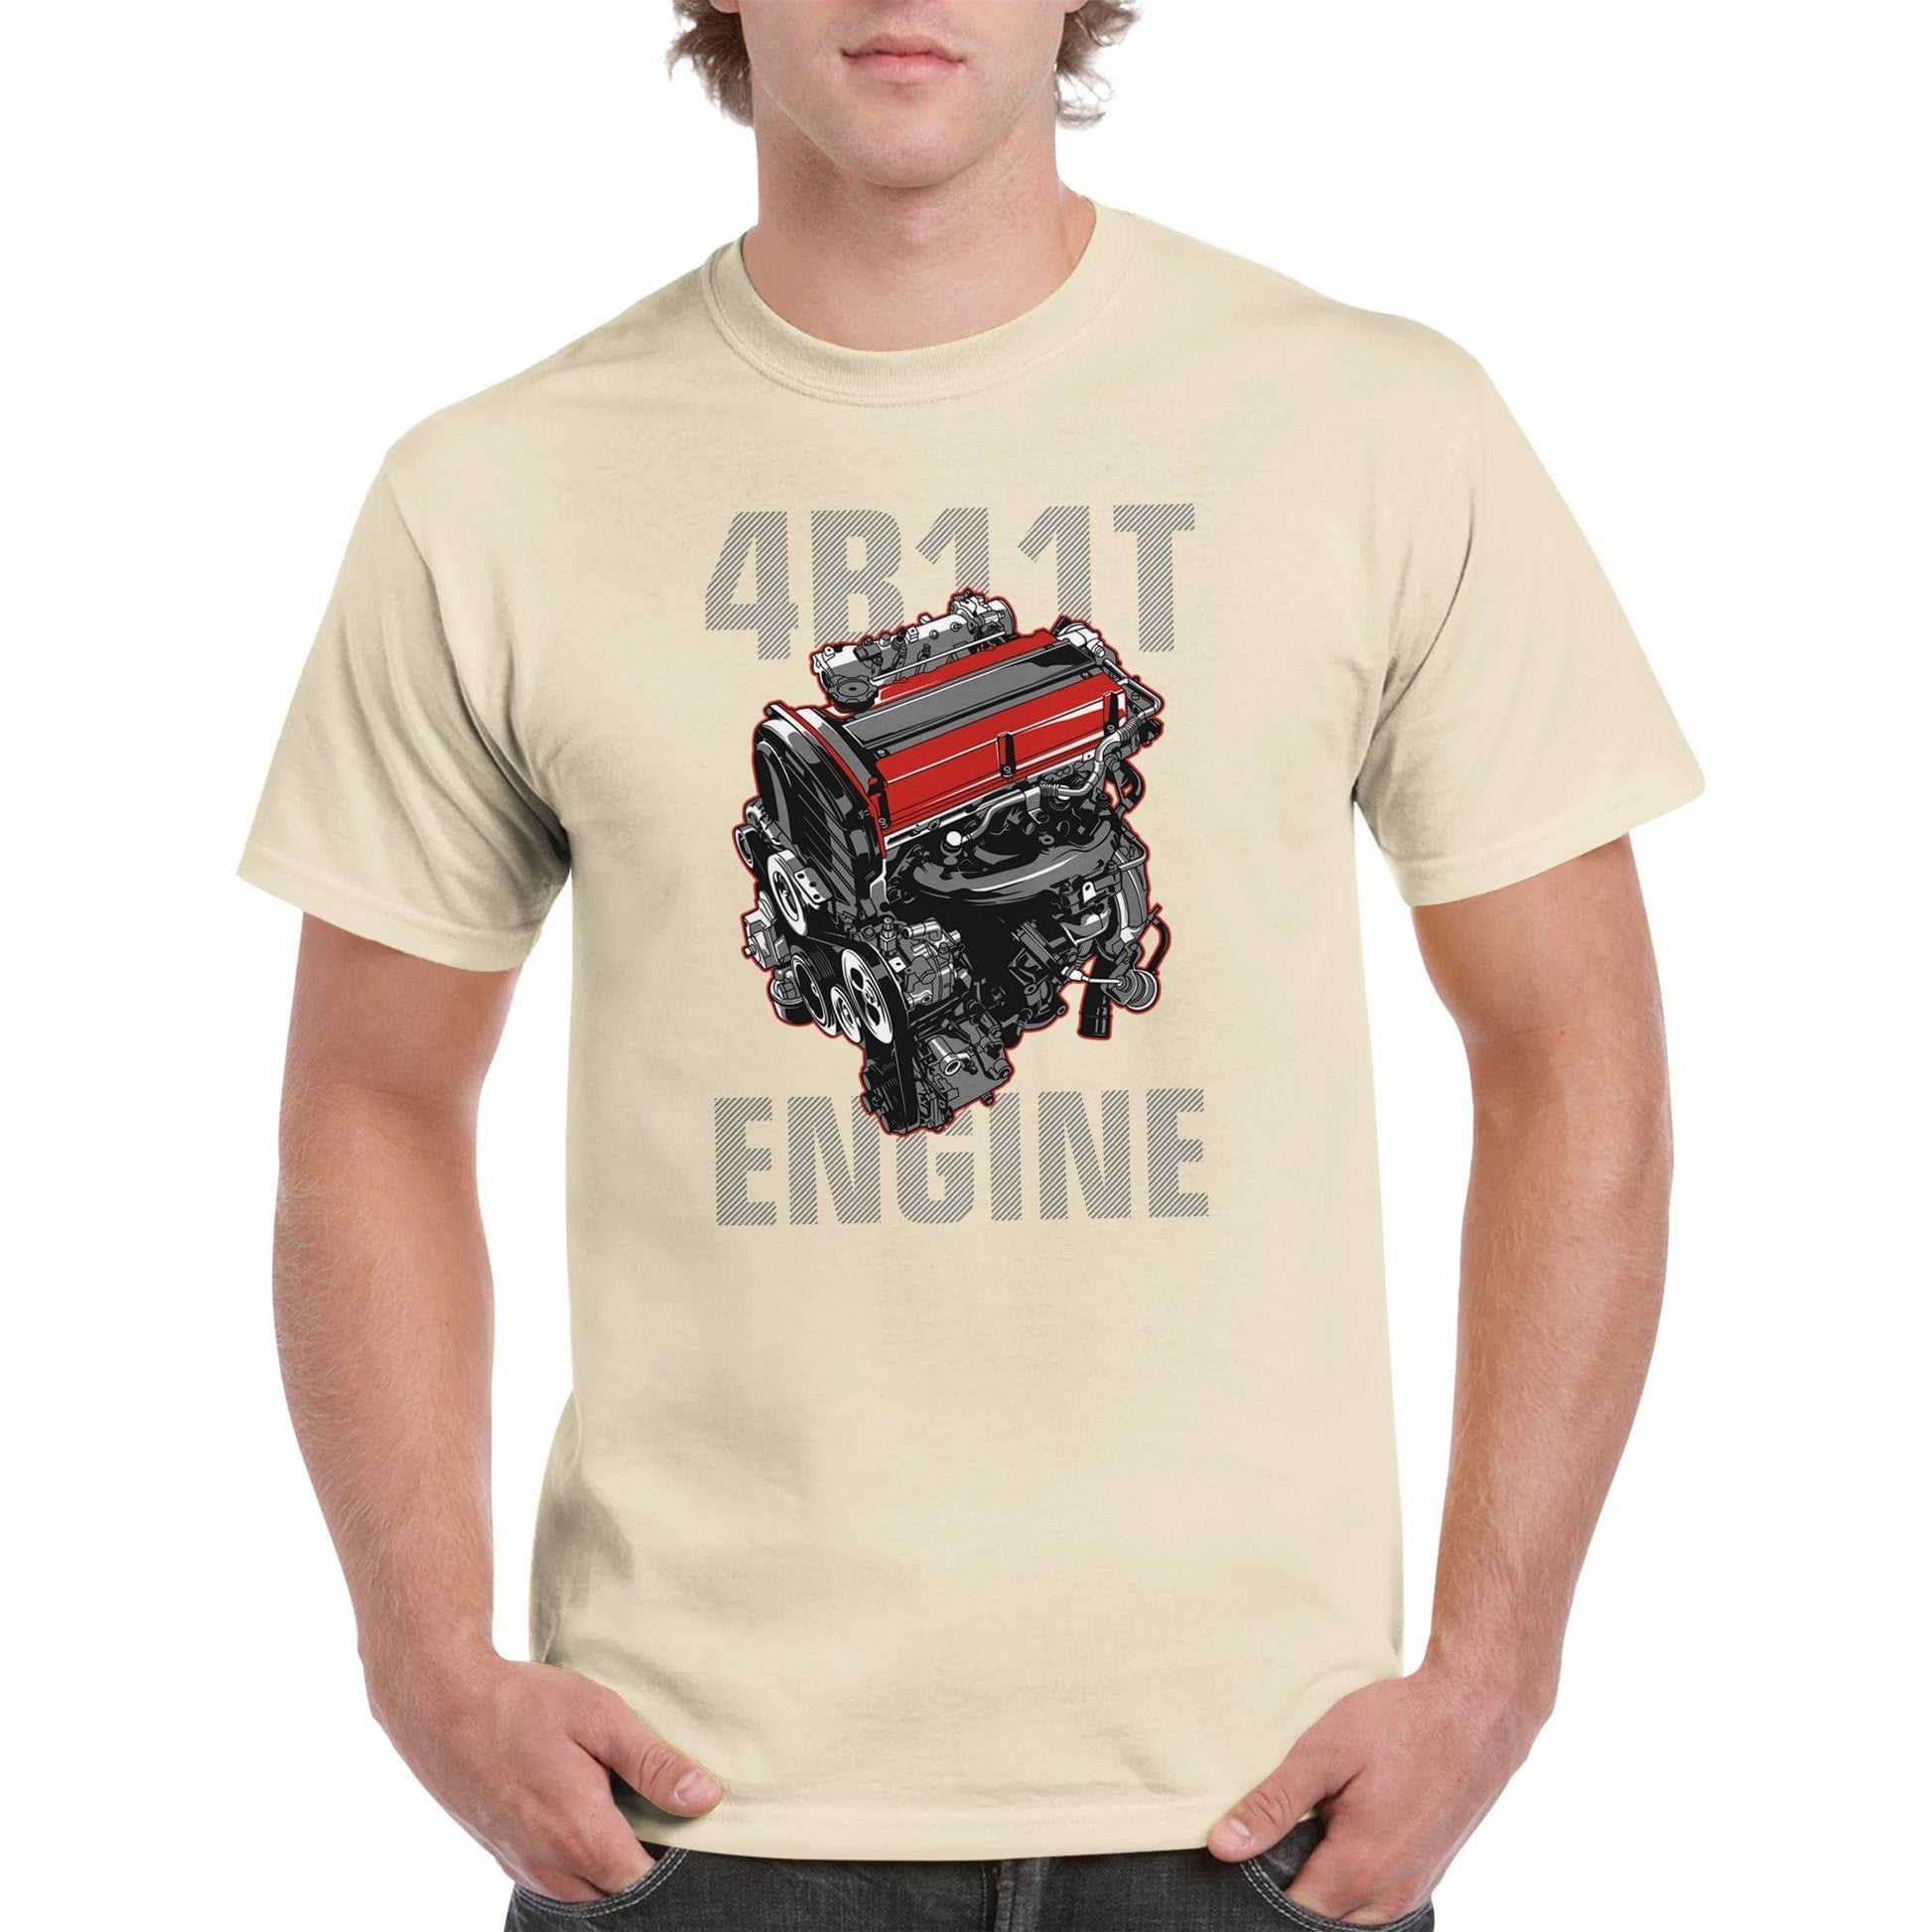 4B11T Engine T-shirt Australia Online Color